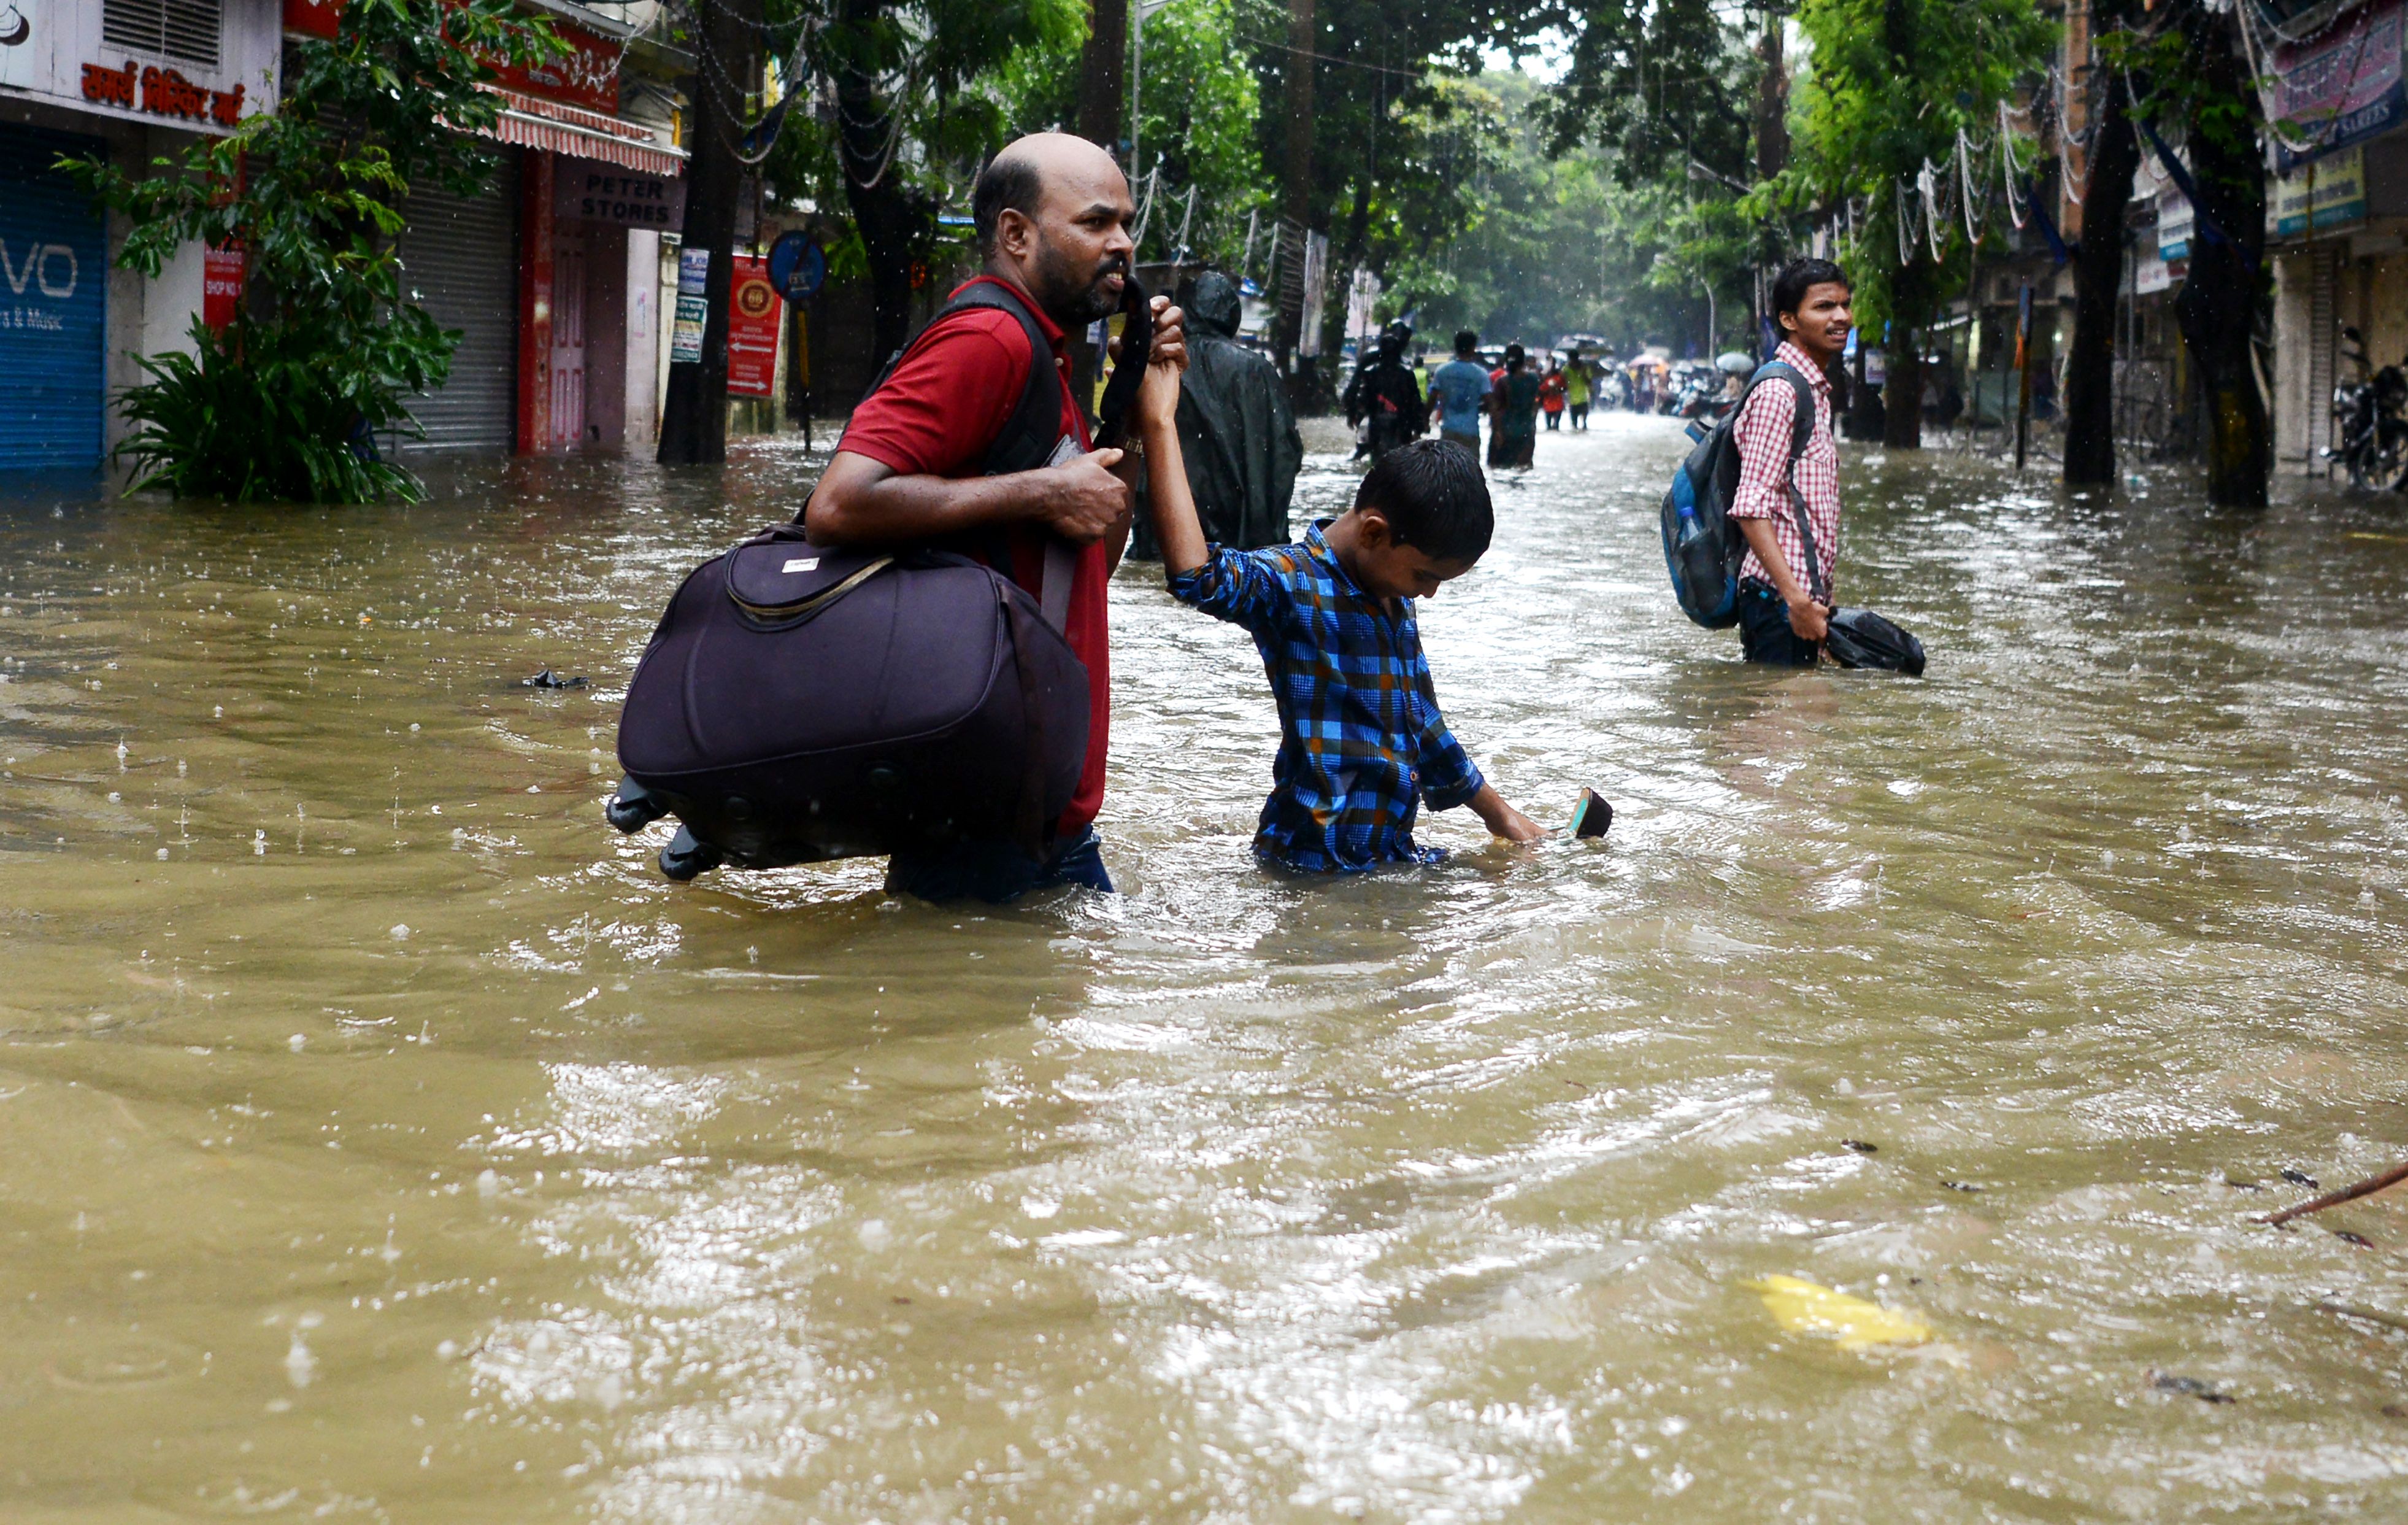 إلغاء الرحلات الجوية وتوقف القطارات فى الهند بسبب الفيضانات